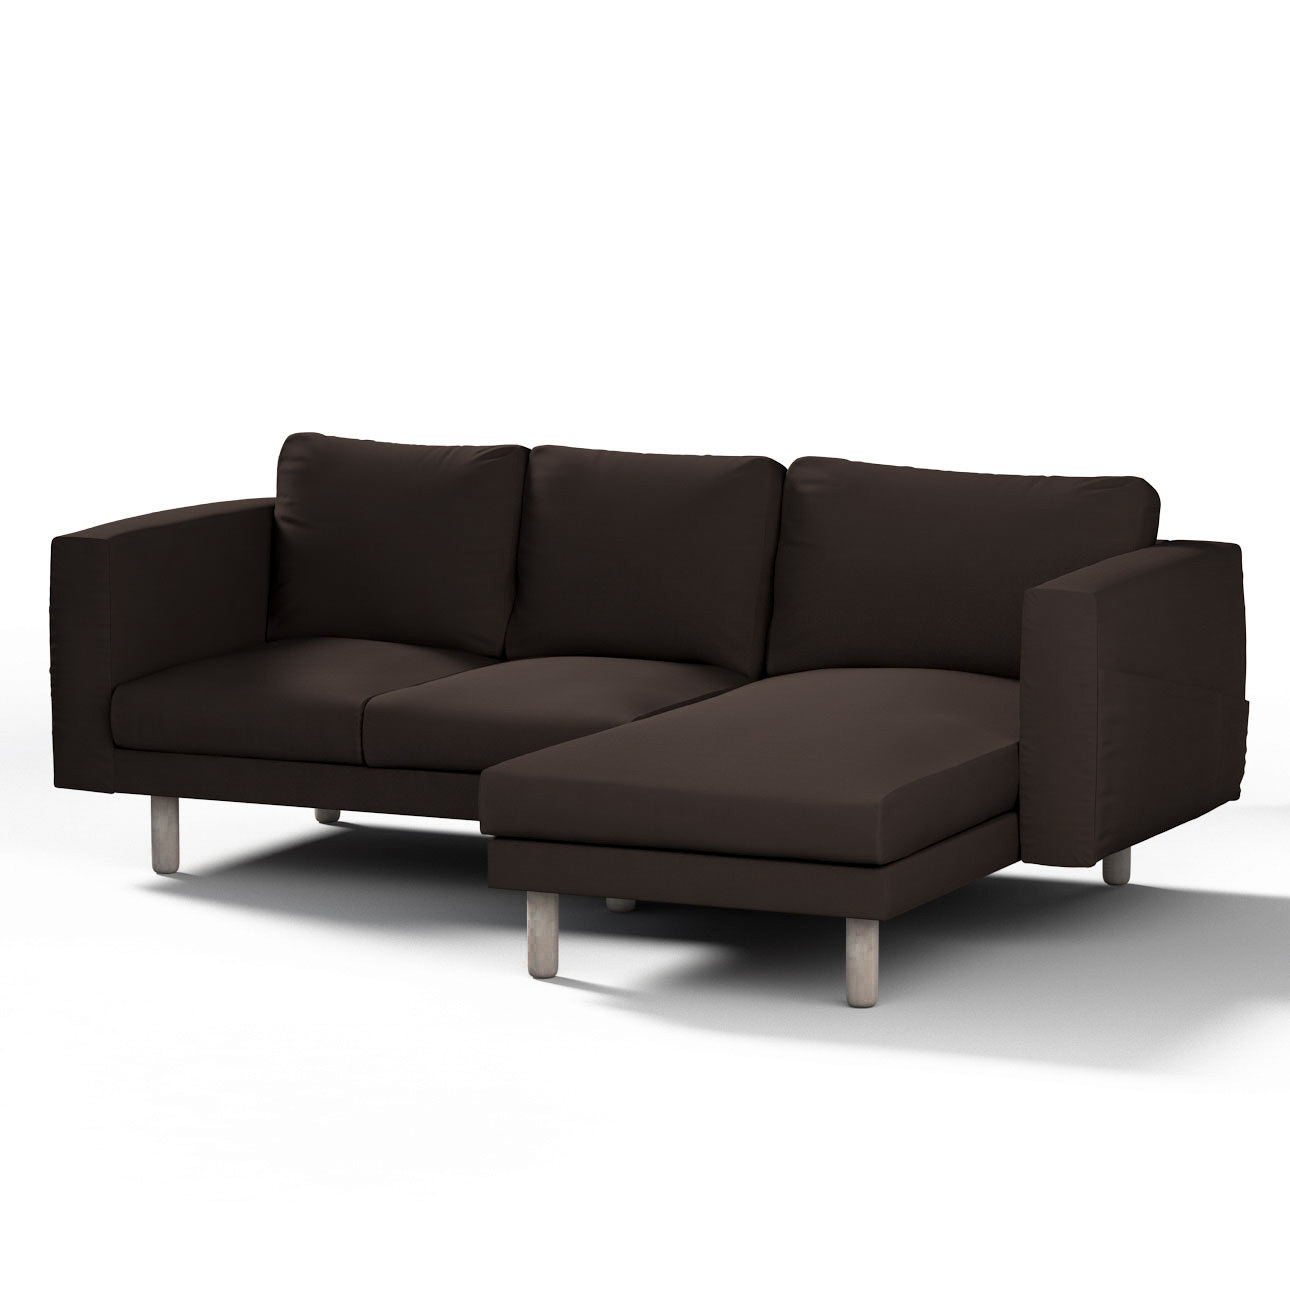 Bezug für Norsborg 3-Sitzer Sofa mit Recamiere, Kaffee, Norsborg Bezug für günstig online kaufen